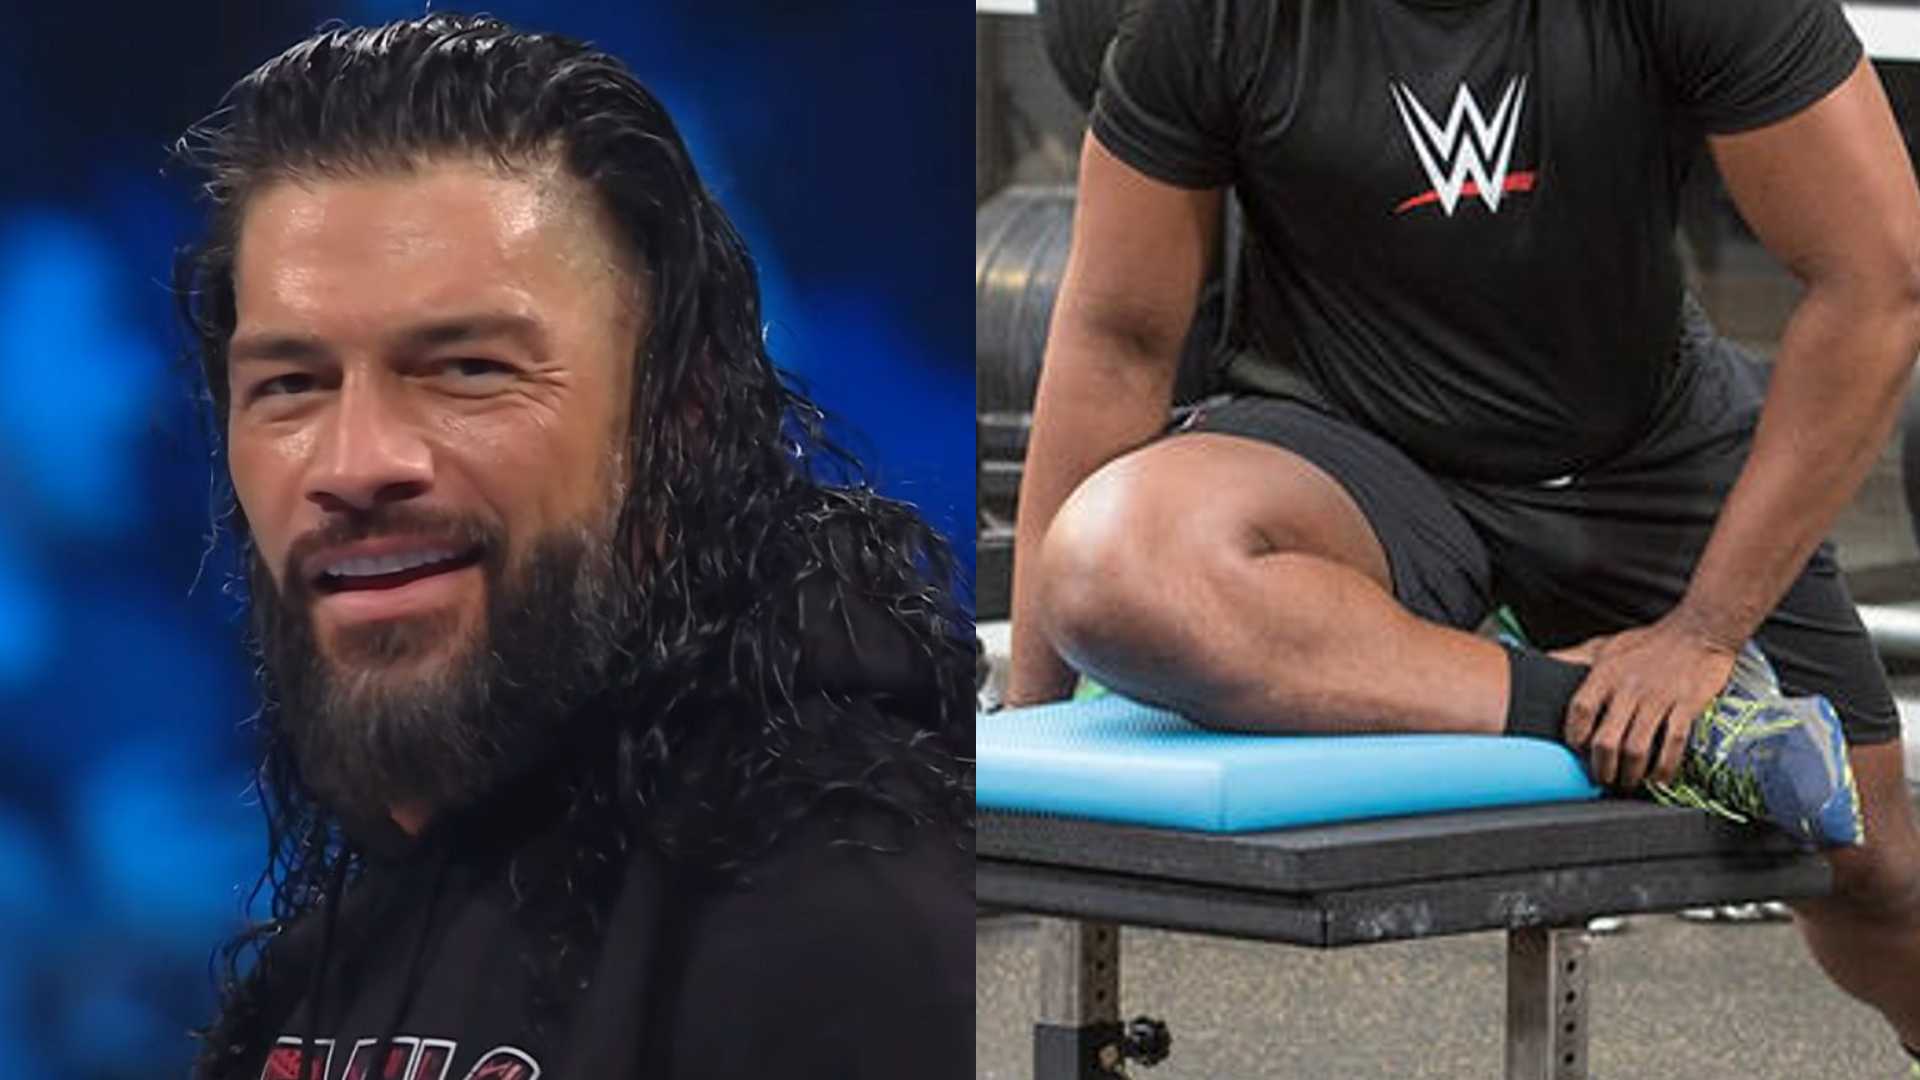 ¿El mejor amigo de Roman Reigns regresará con el ex campeón, nuevo miembro de Bloodline? 3 predicciones para WWE SmackDown antes de SummerSlam